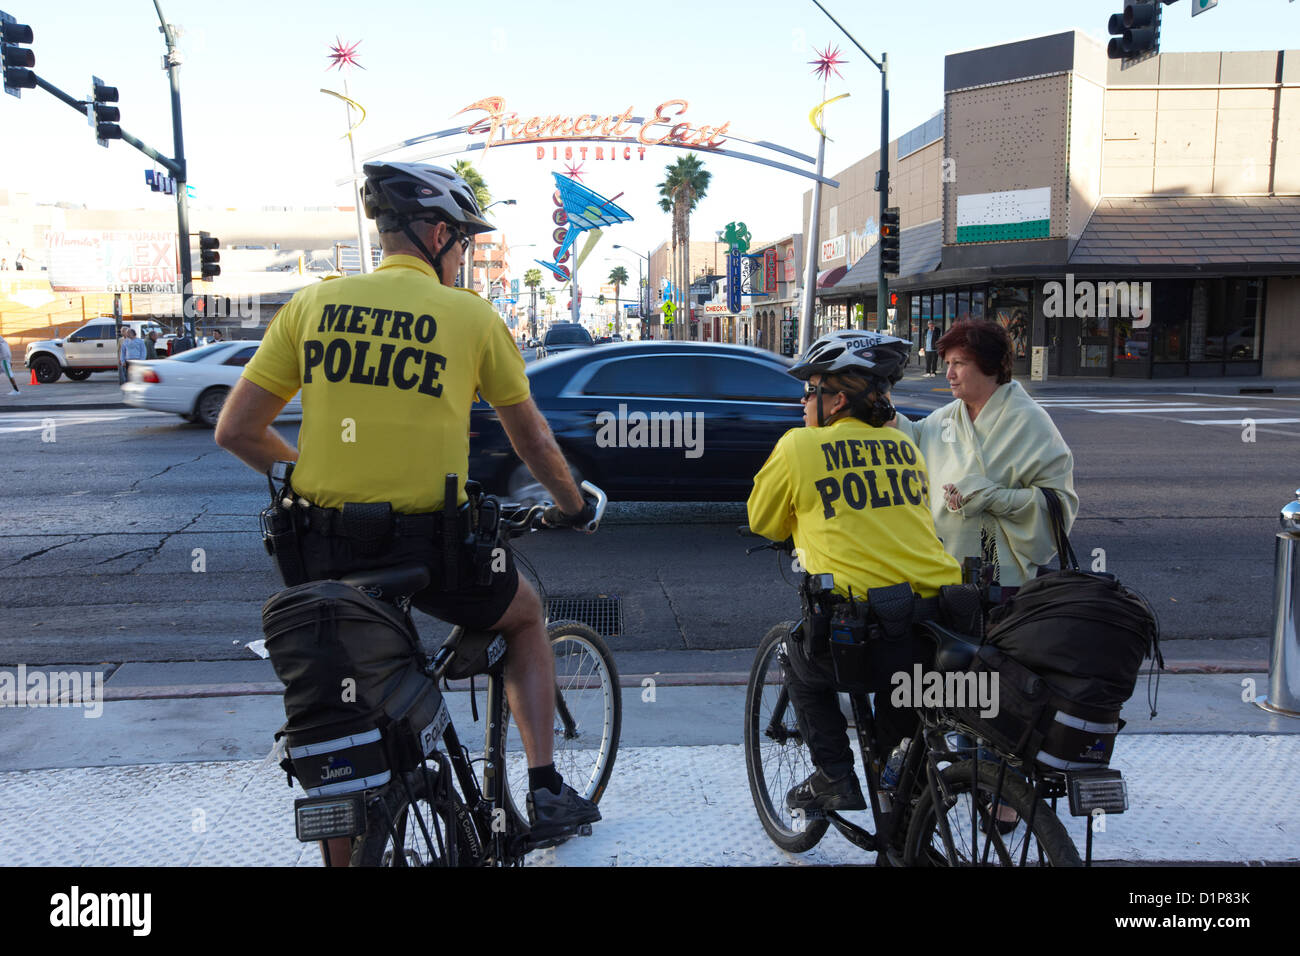 La policía de metro bicicleta cops ayudar a un turista con direcciones en el centro de Las Vegas, Nevada, EE.UU. Foto de stock